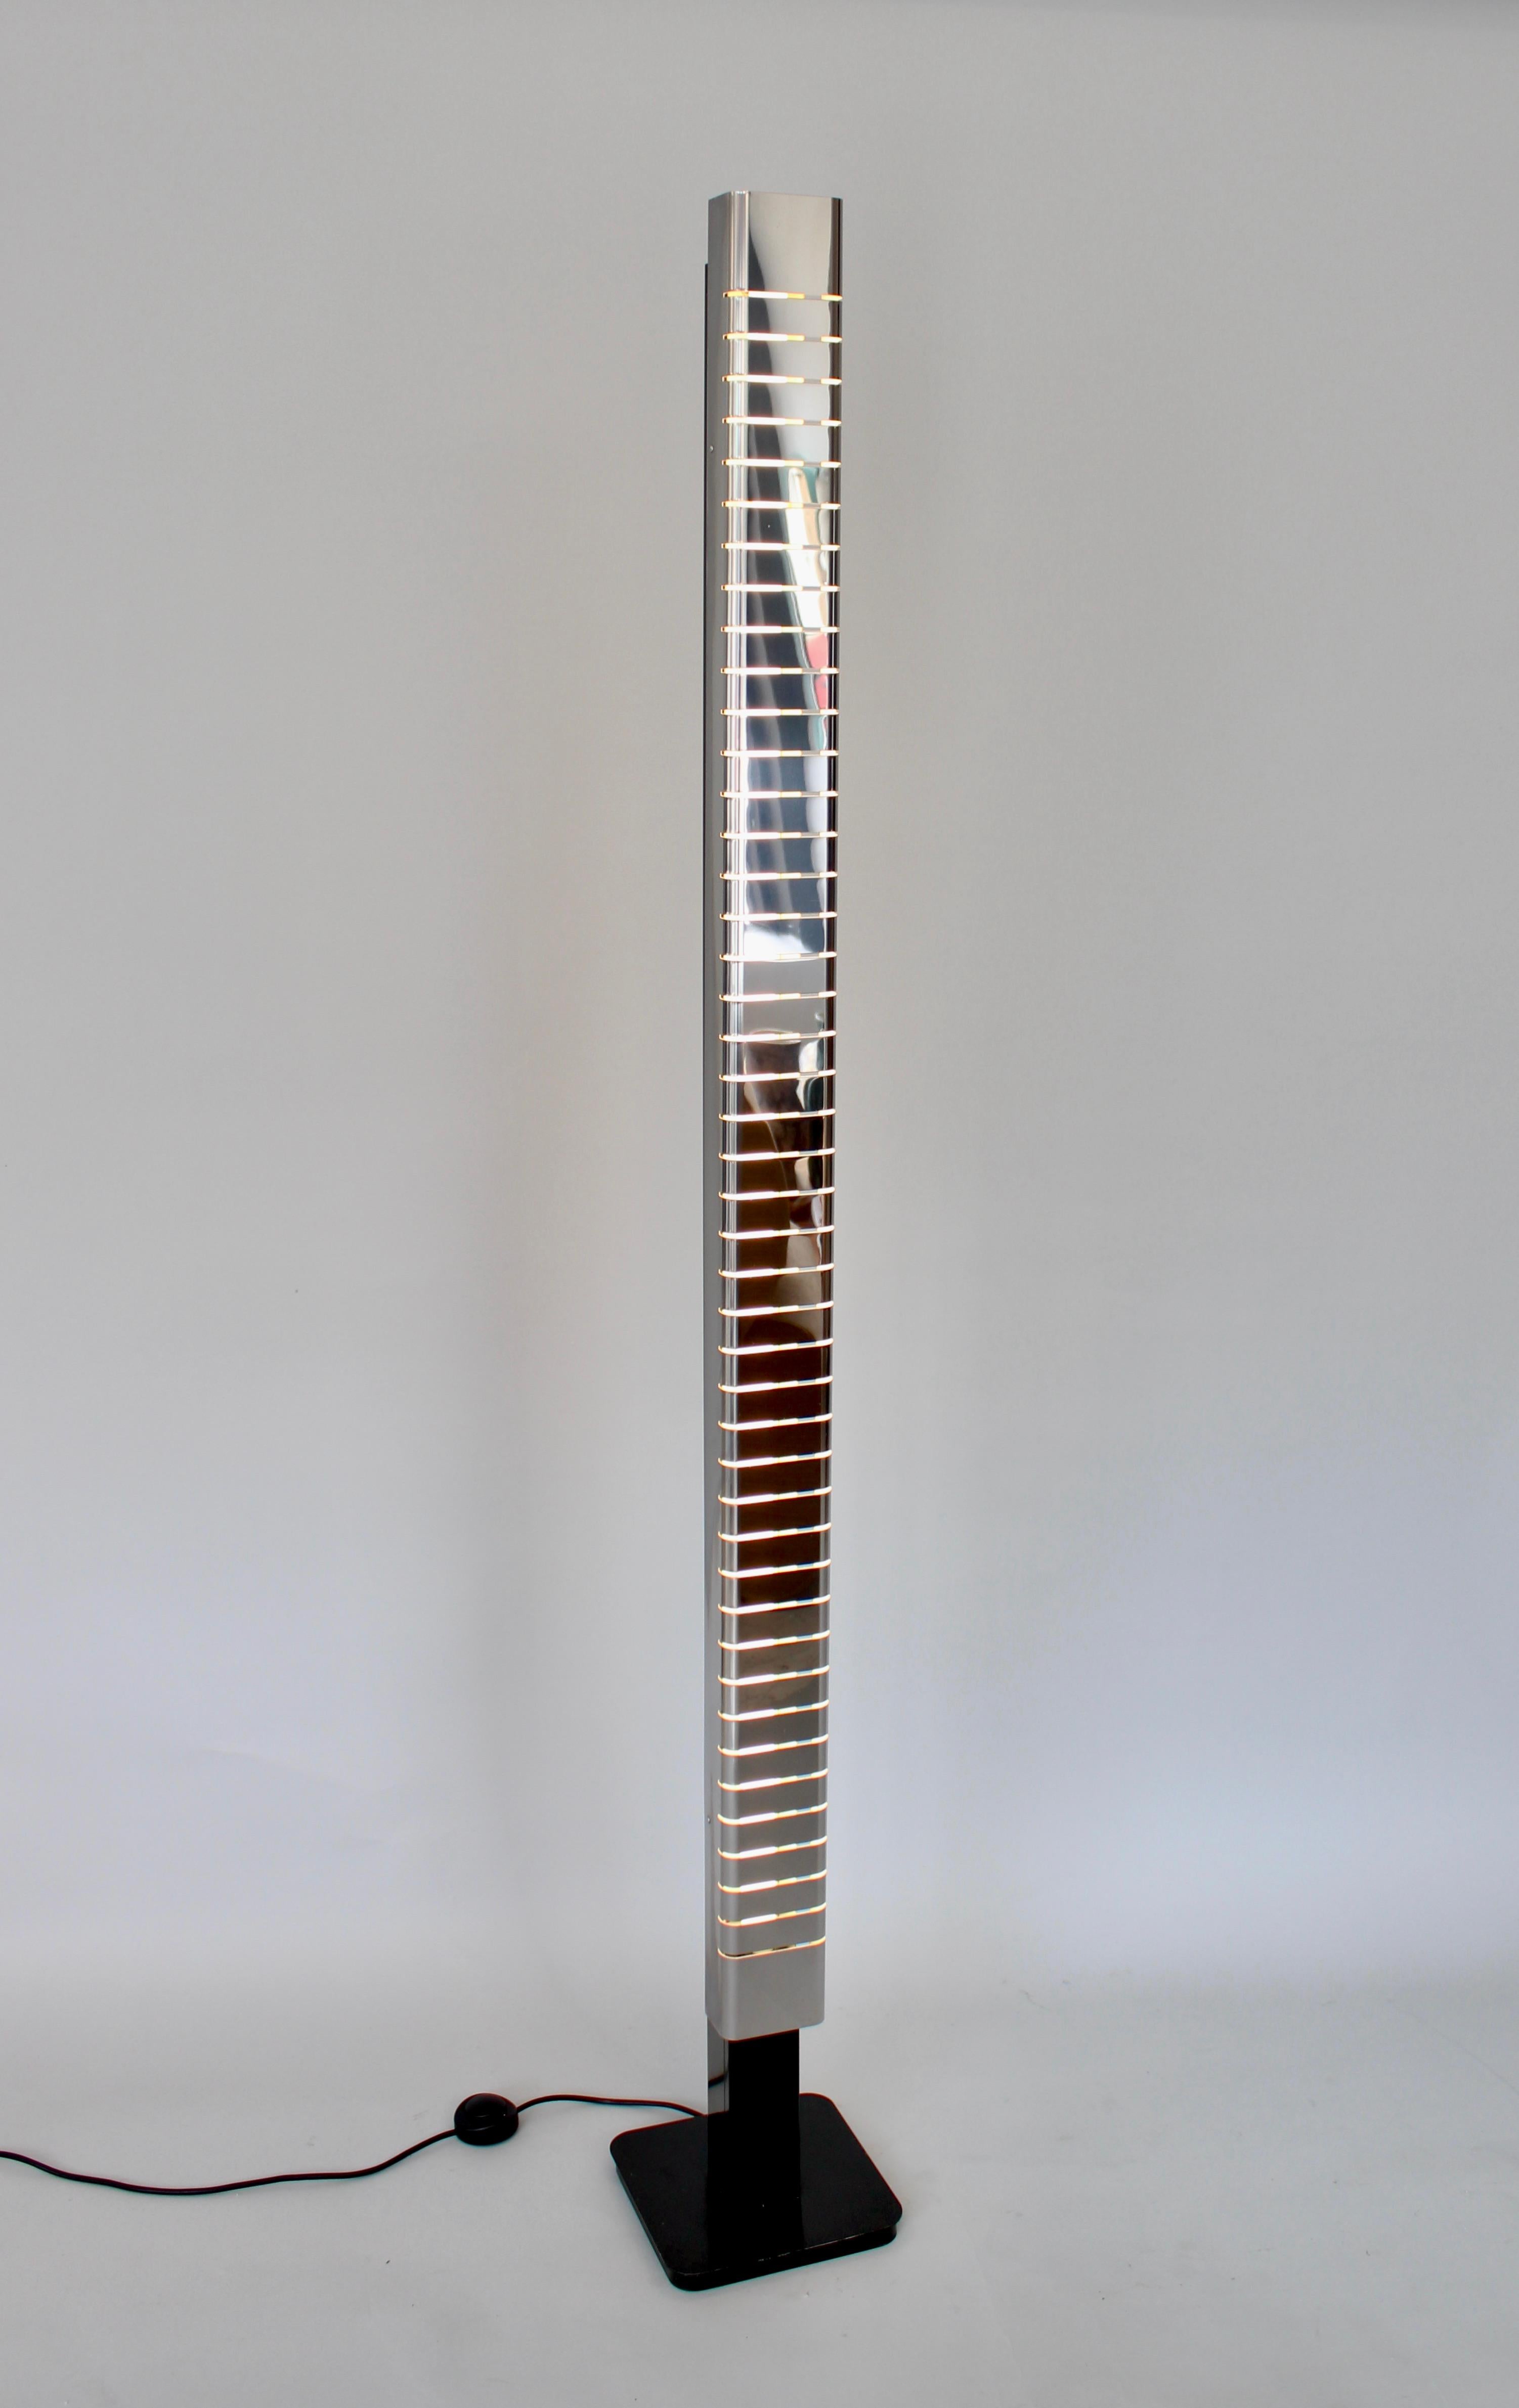 Diese Stehleuchte wurde von Lamperti entworfen und um 1970 in Italien hergestellt. Nach dem Vorbild von Serge Mouille. 
Der Diffusor aus poliertem, verchromtem Stahl schwebt über einer Struktur aus emailliertem Stahl, die das Leuchtmittel trägt.